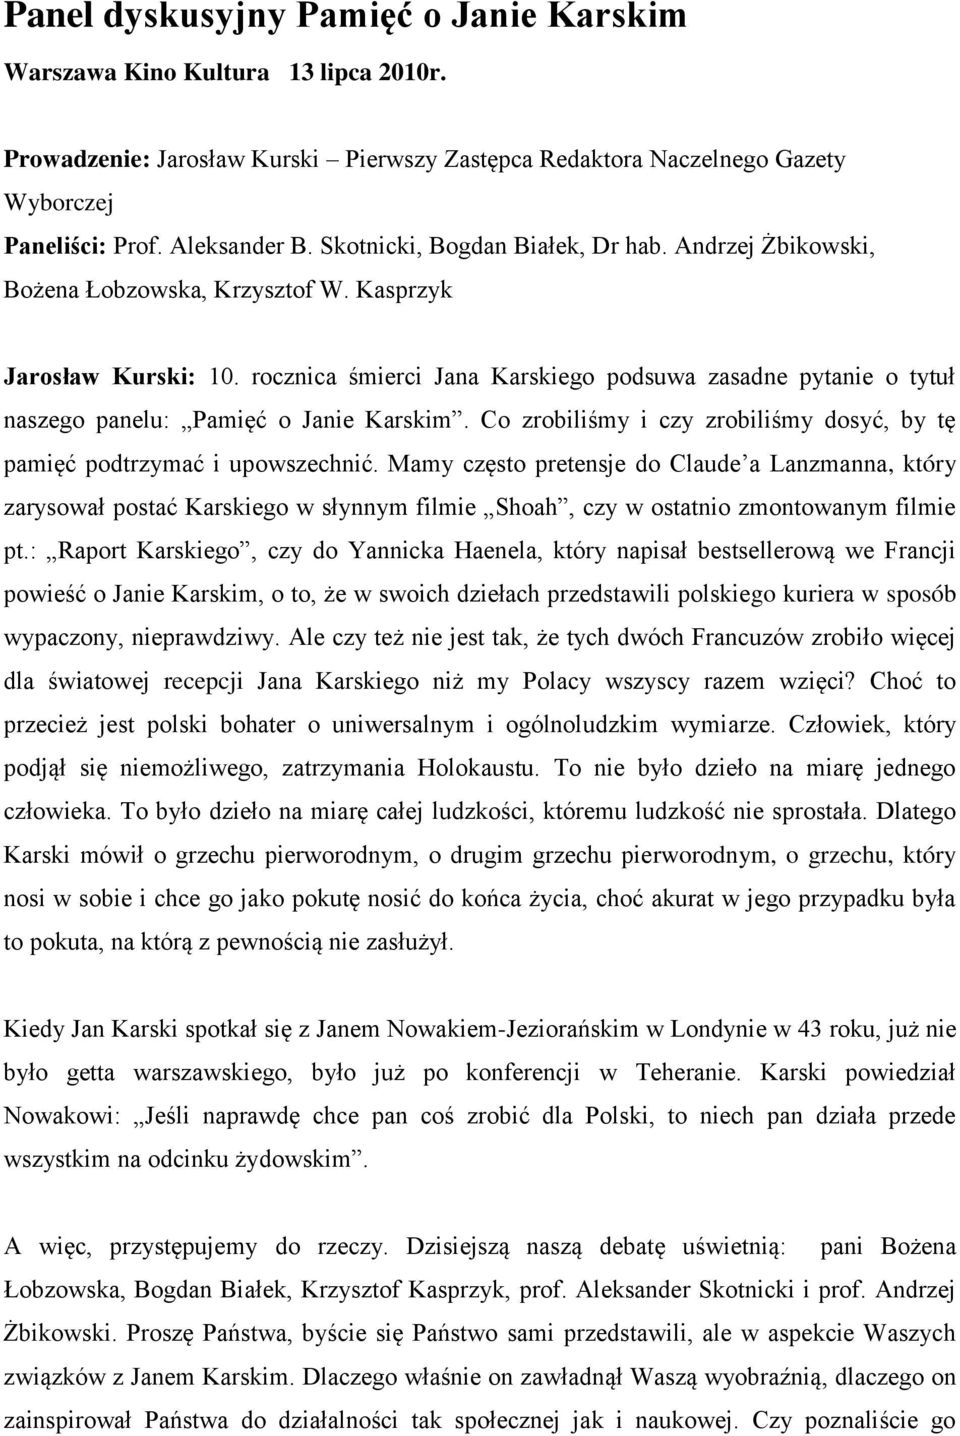 rocznica śmierci Jana Karskiego podsuwa zasadne pytanie o tytuł naszego panelu: Pamięć o Janie Karskim. Co zrobiliśmy i czy zrobiliśmy dosyć, by tę pamięć podtrzymać i upowszechnić.